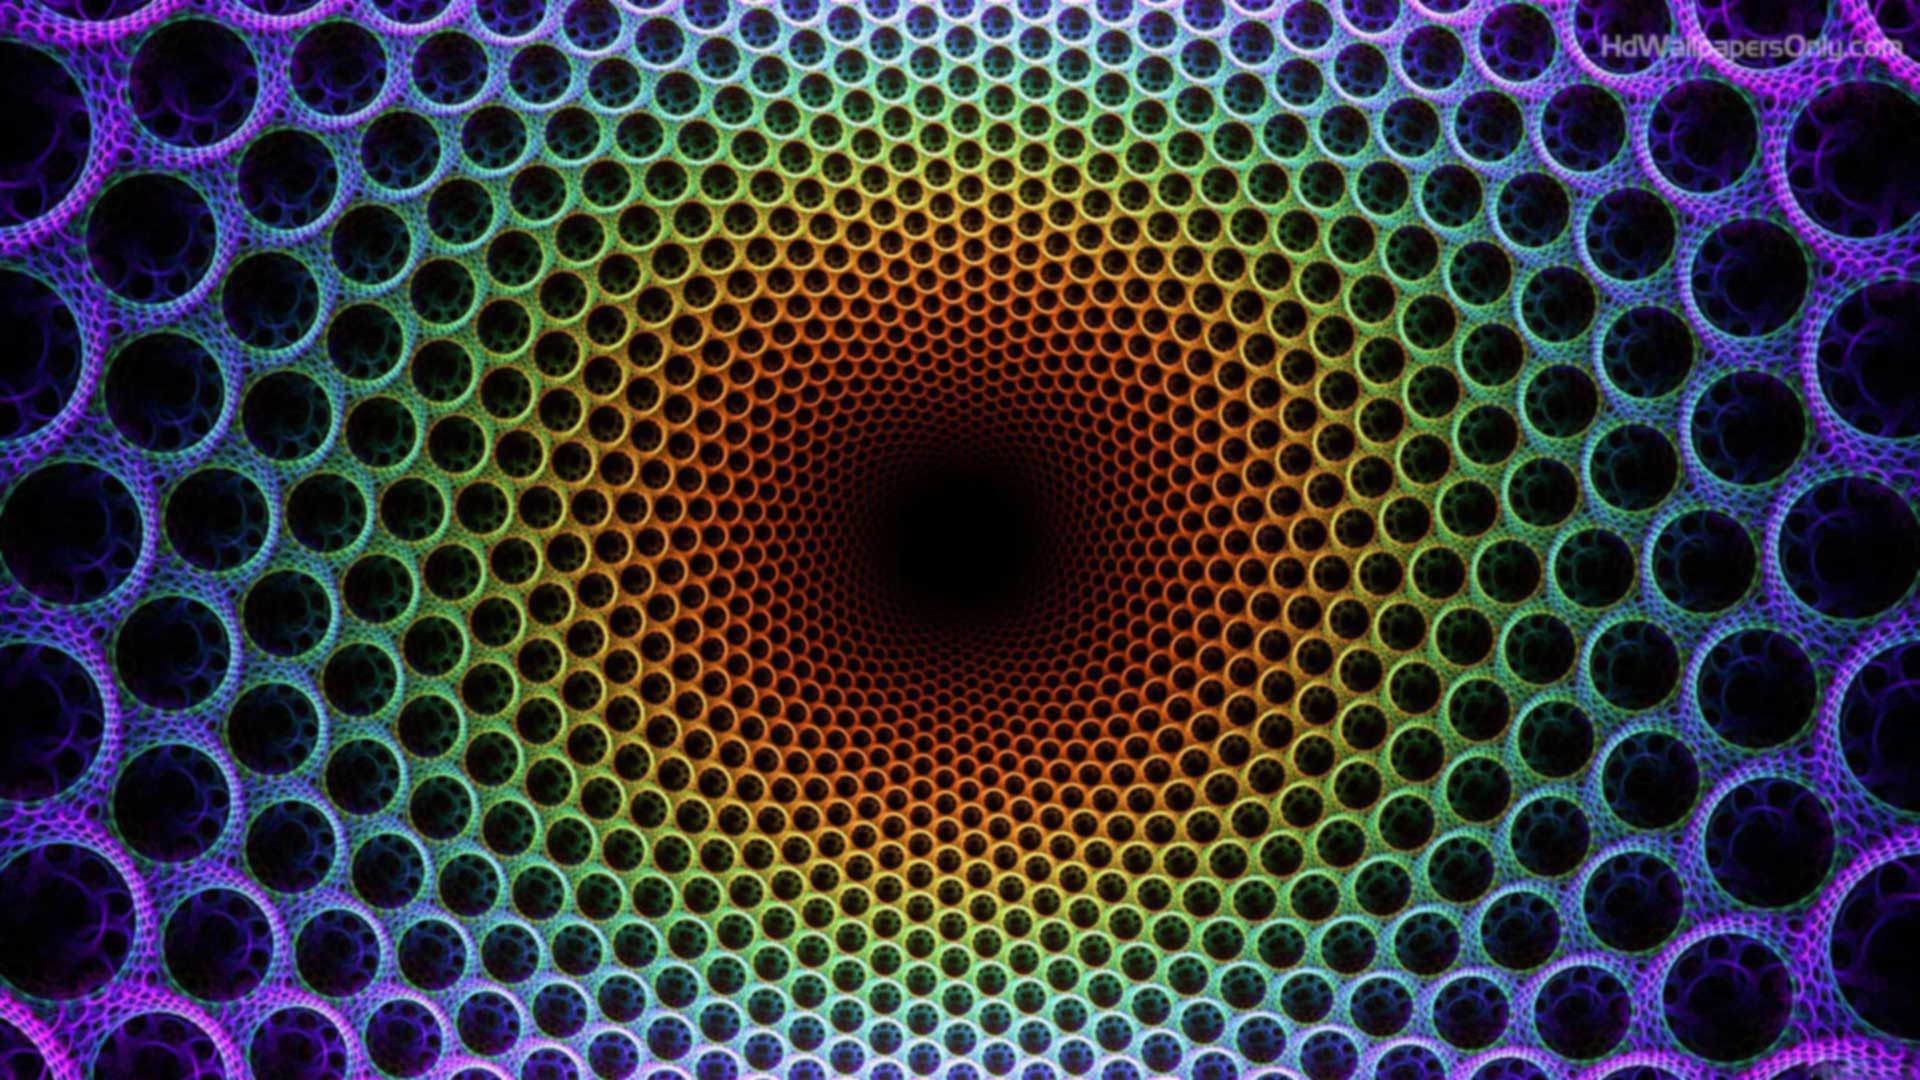 Optical Illusion iPhone Wallpaper Design Ideas Illusions